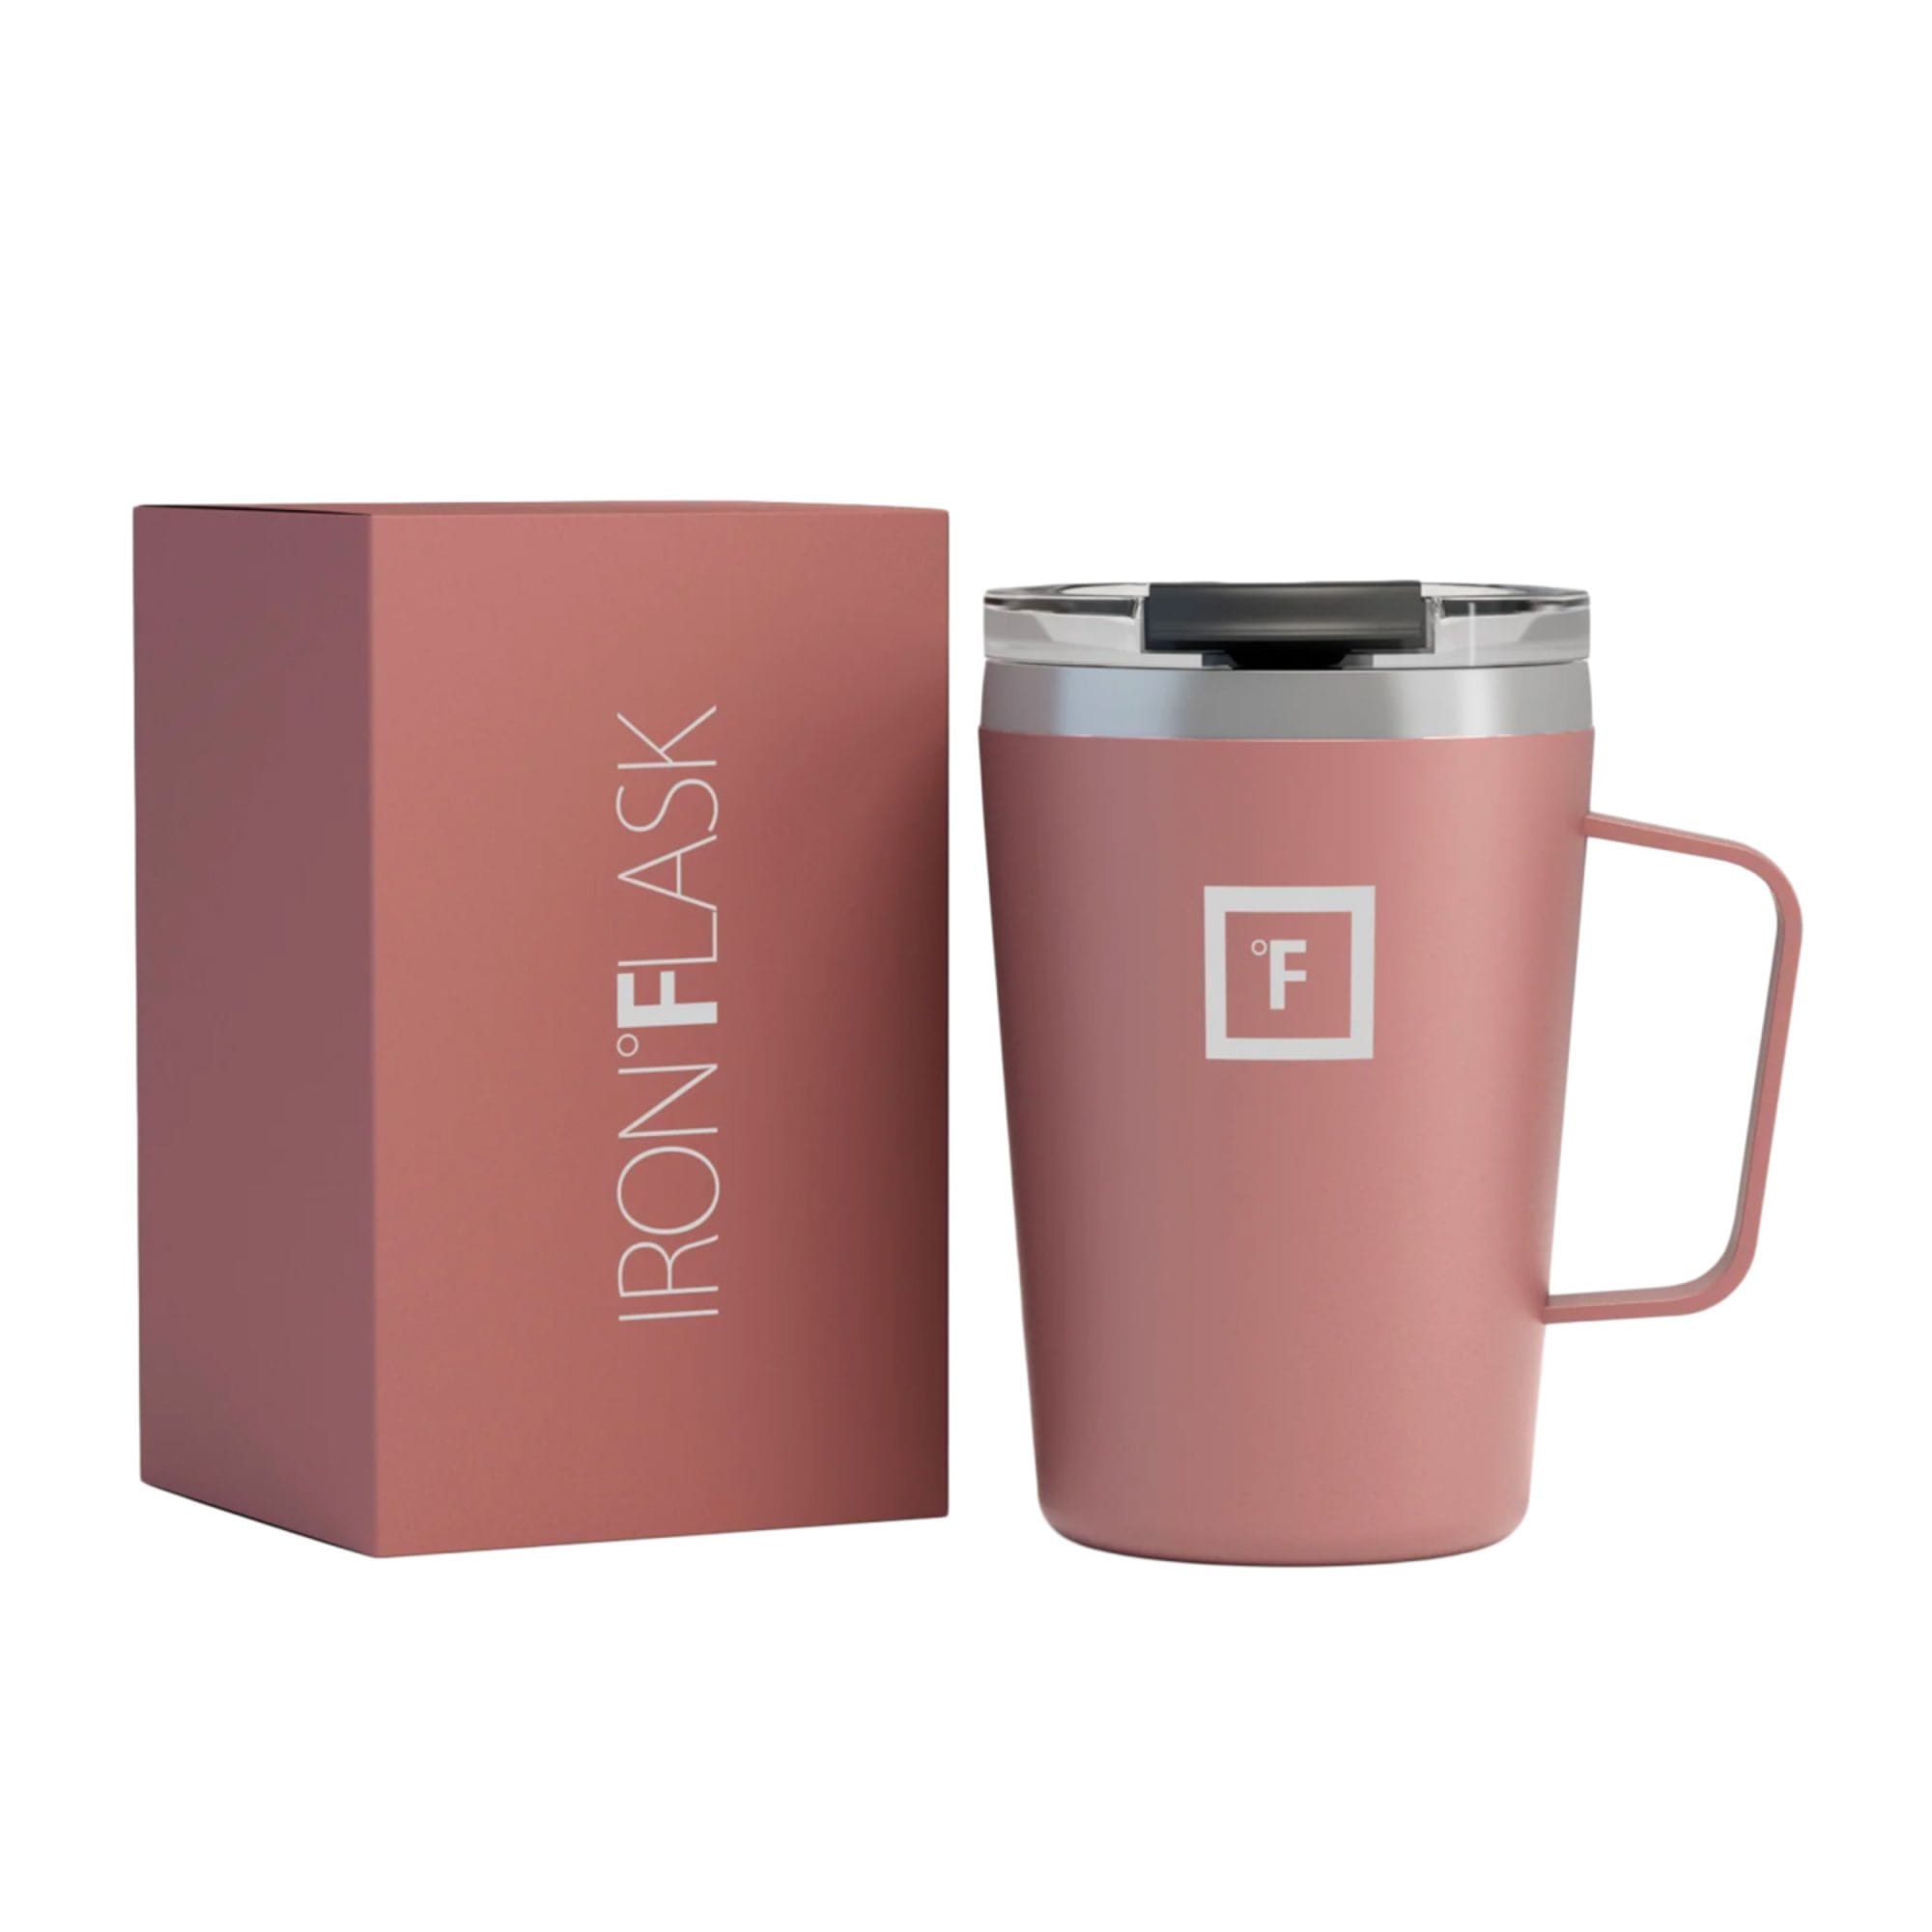 New Contigo Luxe Autoseal Travel Mug 354ml Coffee Flask BPA Free